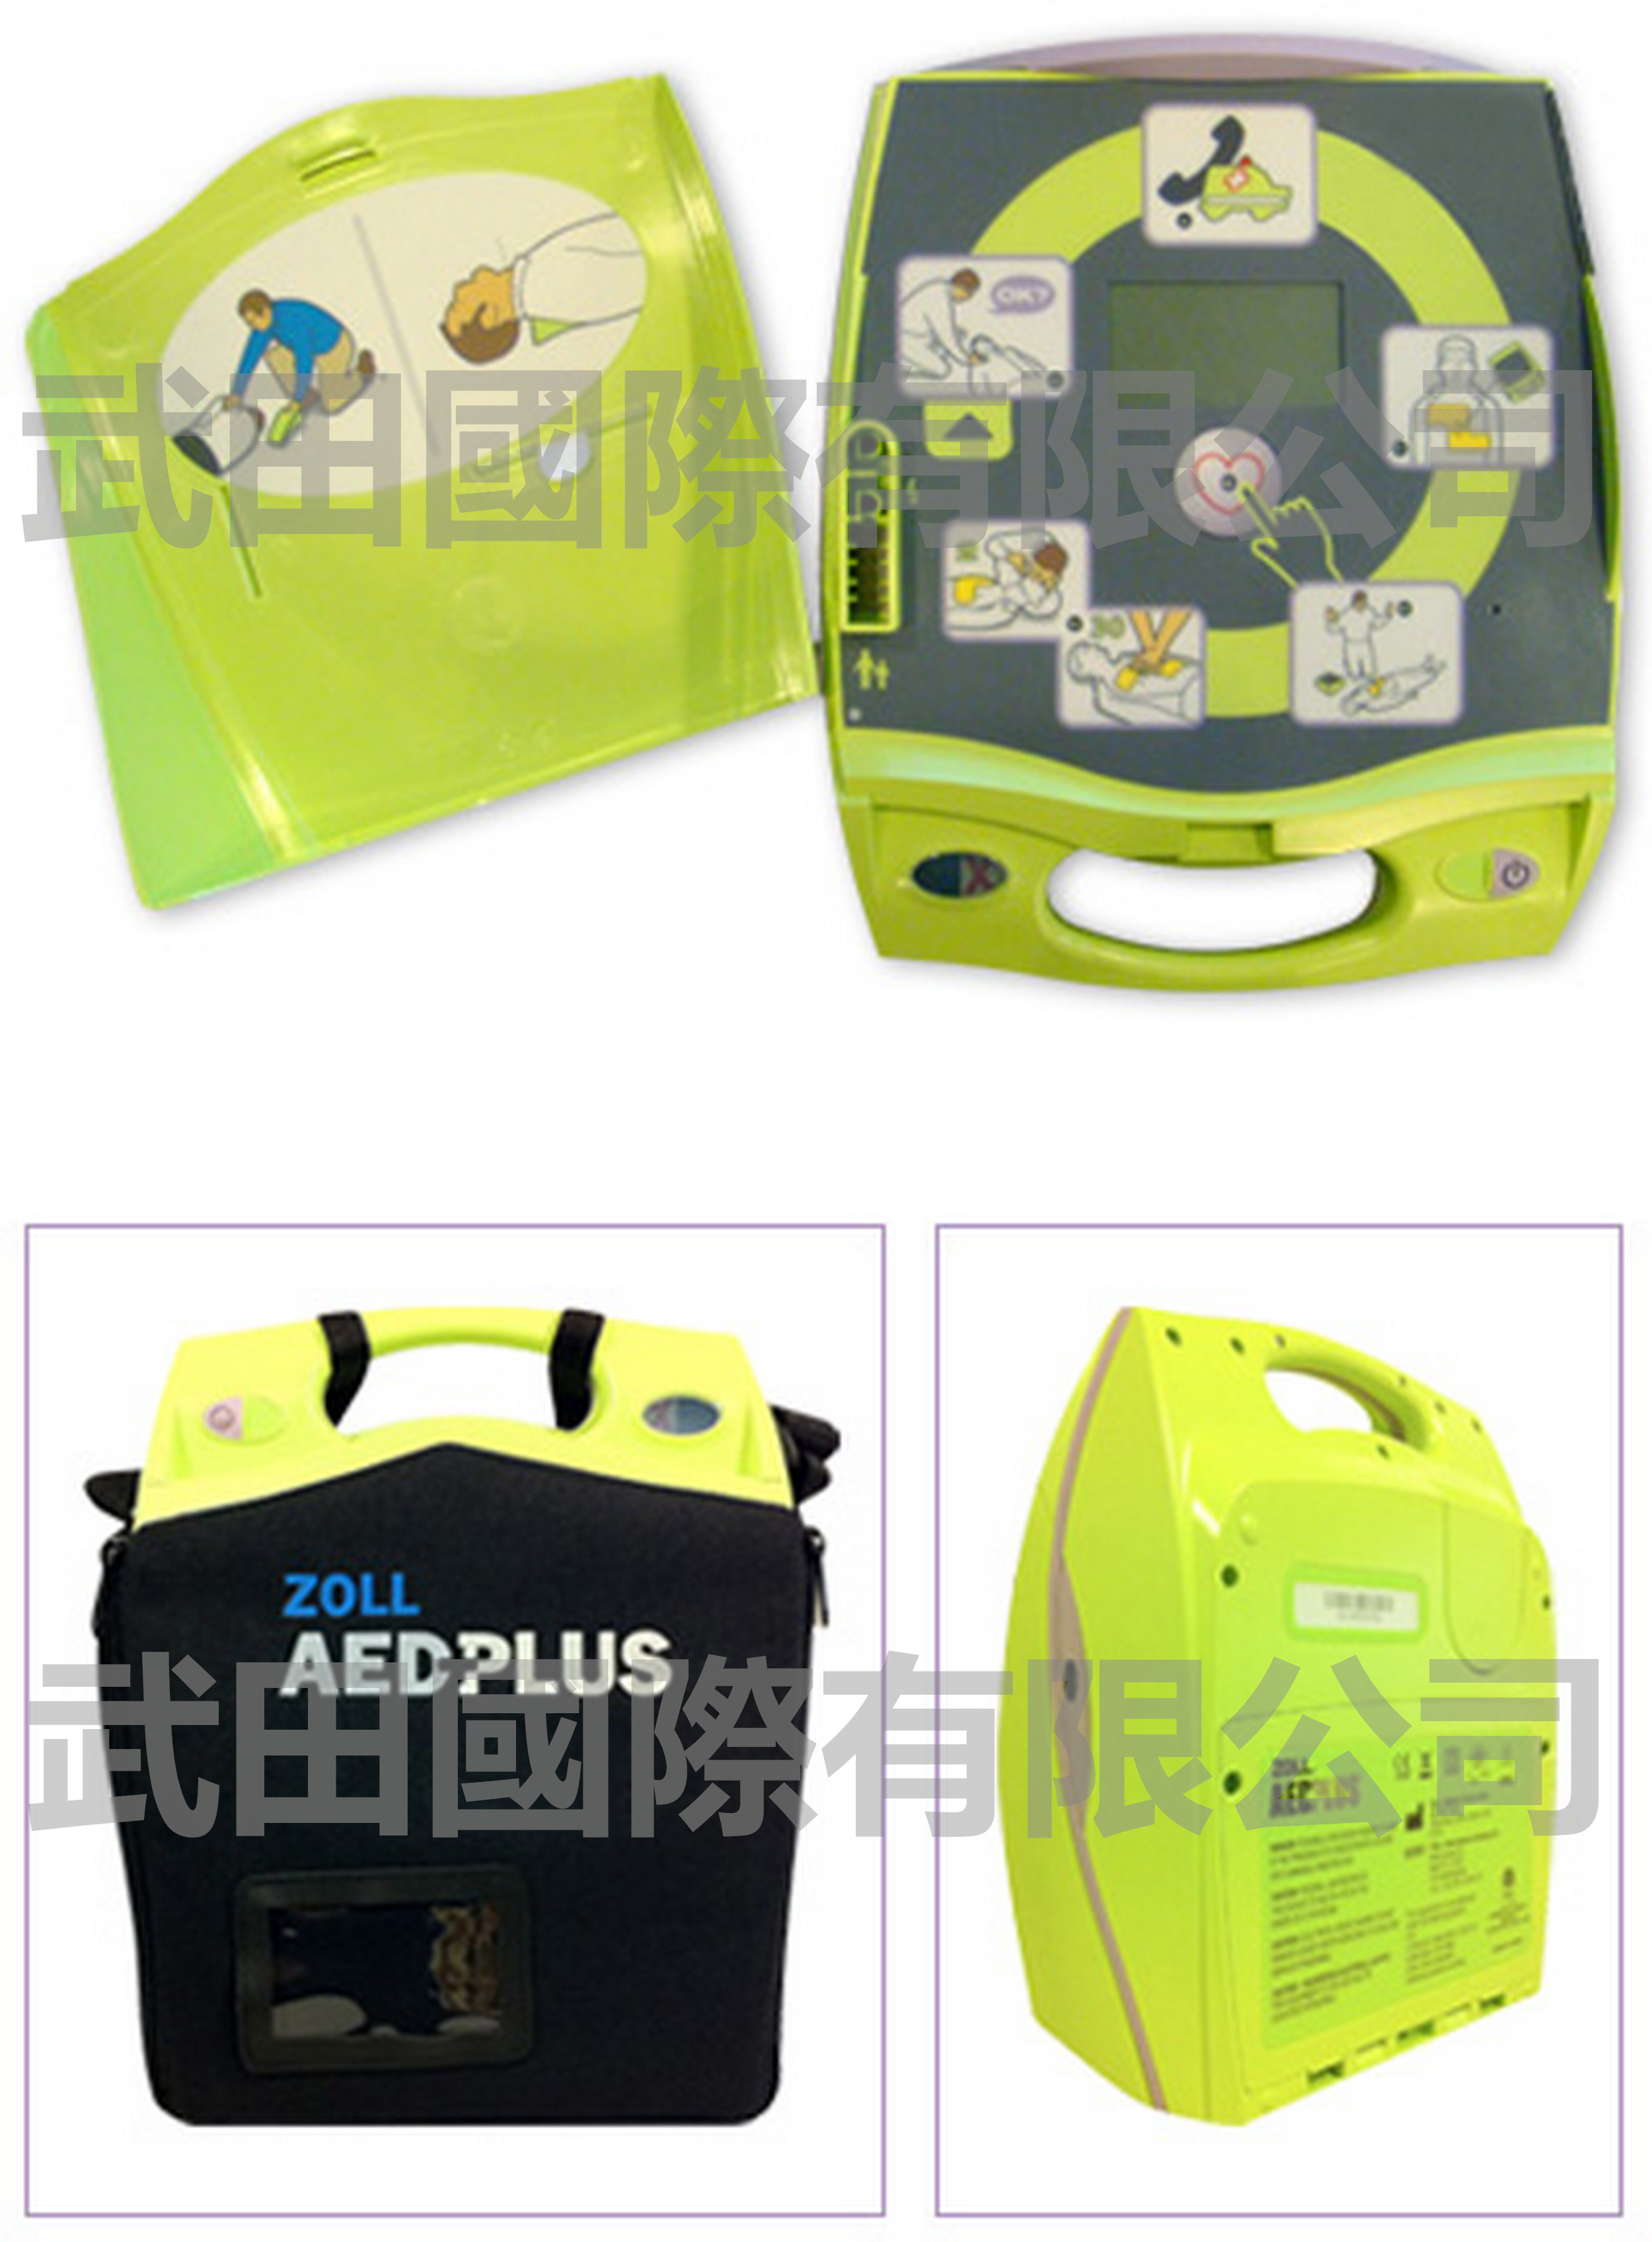 自動體外心臟電擊器 AED Plus - ZOLL，具備心臟電擊除顫+CPR_副本.jpg